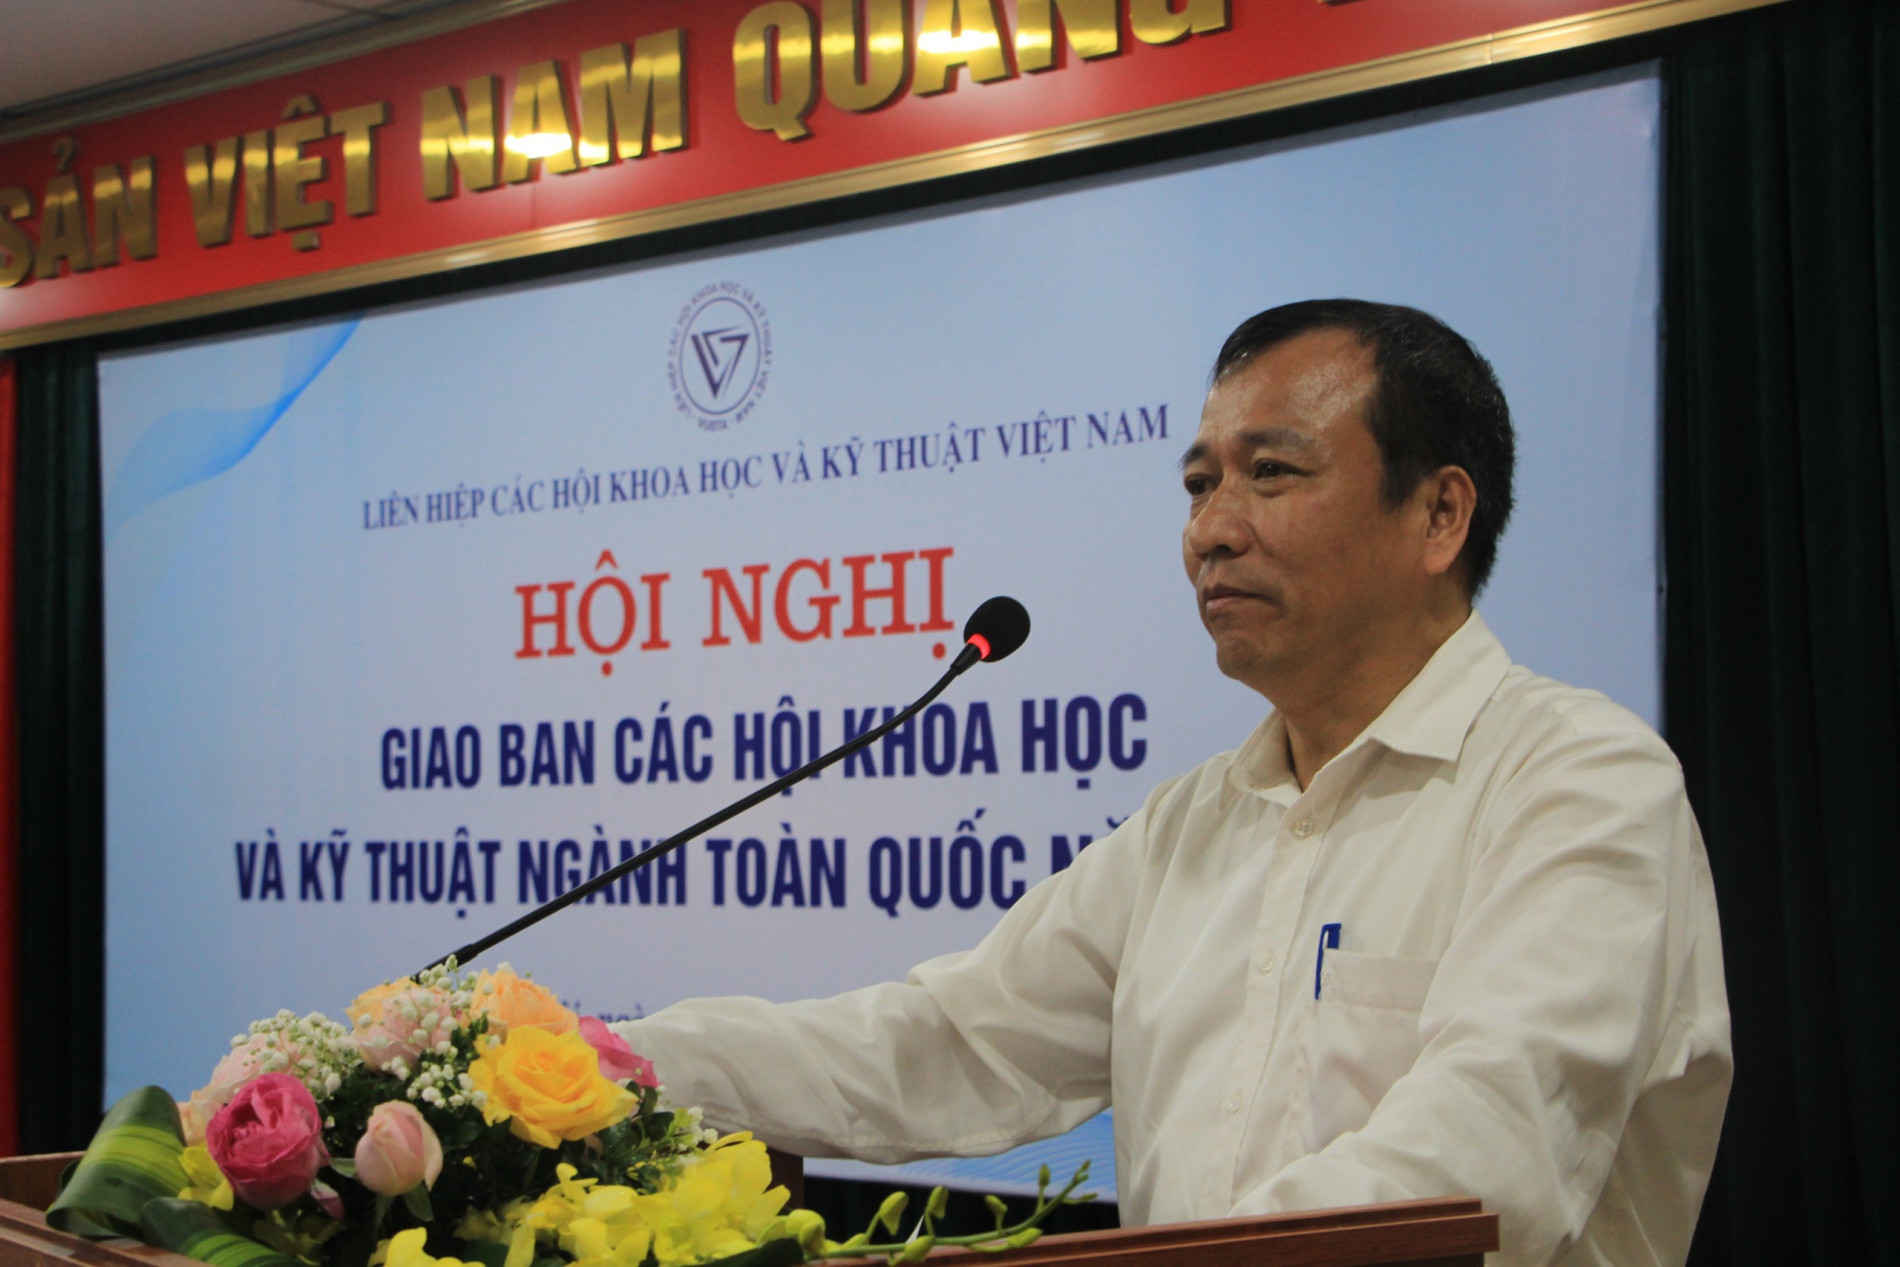 Ông Lê Công Lương – Phó tổng thư ký kiêm Trưởng ban Khoa học công nghệ và Môi trường, Liên hiệp Hội Việt Nam